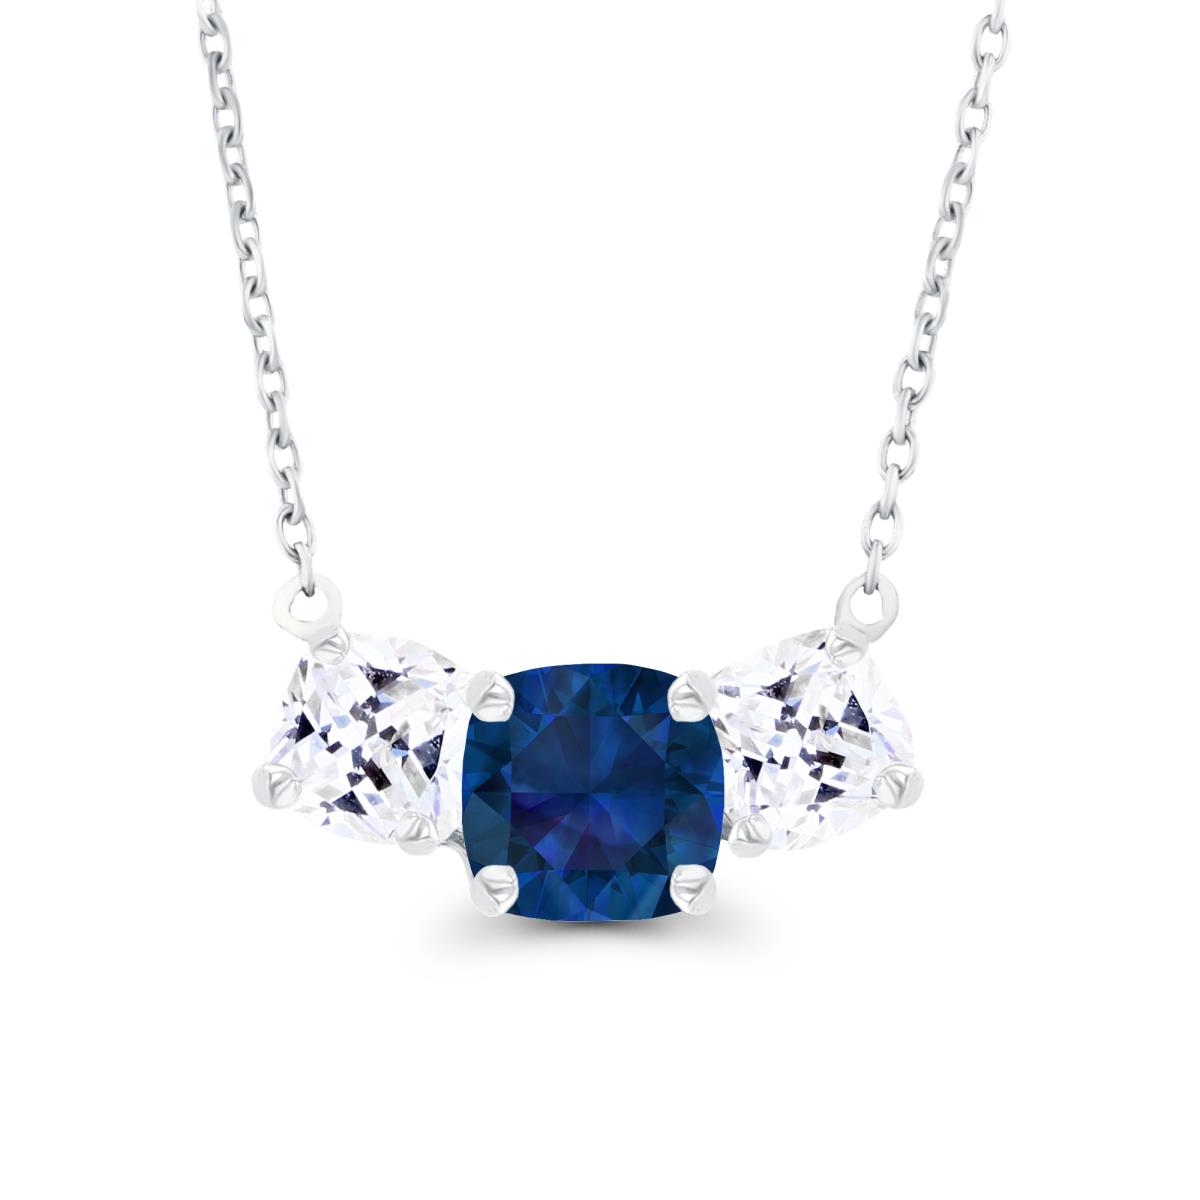 14K White Gold 5mm Cushion Created Blue Sapphire & 4mm Cushion Created White Sapphire 3-Stone 18" Necklace